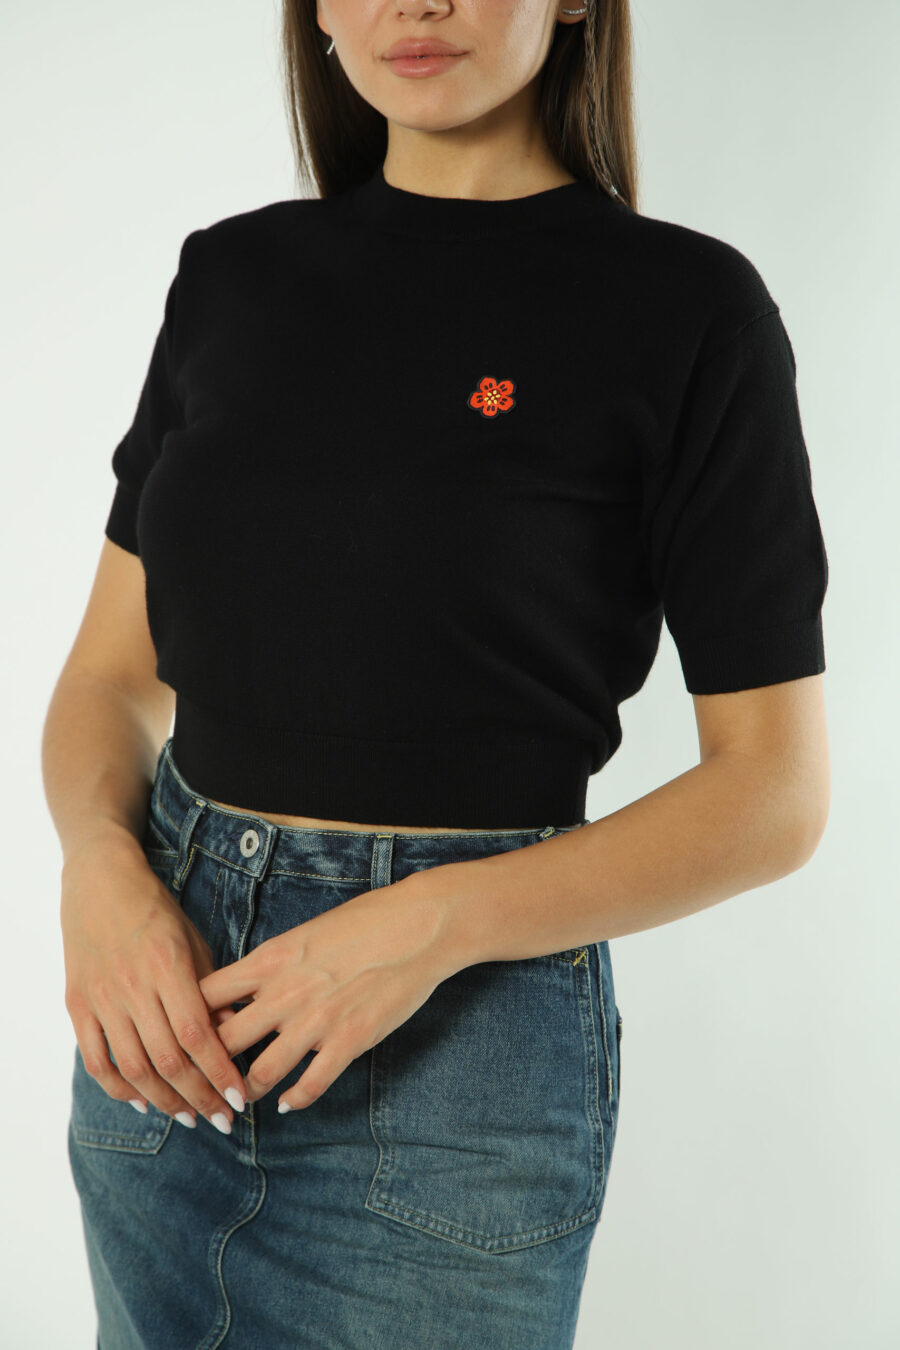 Schwarzer Pullover mit orangem Mini-Logo - Fotos 1295